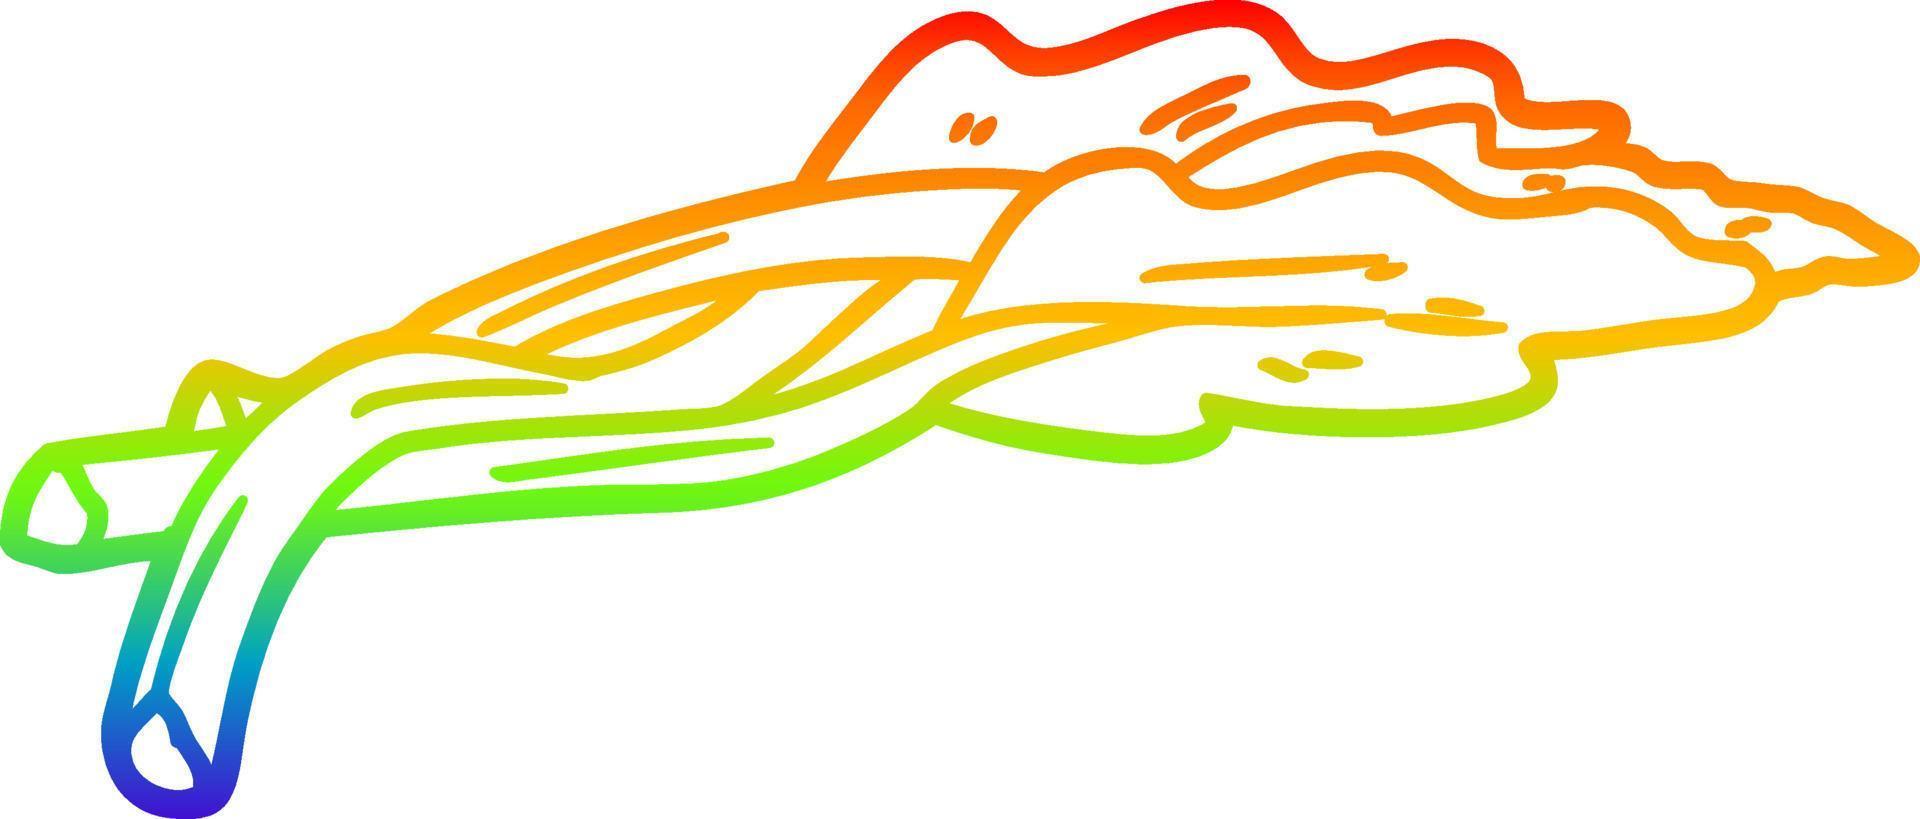 dibujo de línea de gradiente de arco iris ruibarbo de dibujos animados vector